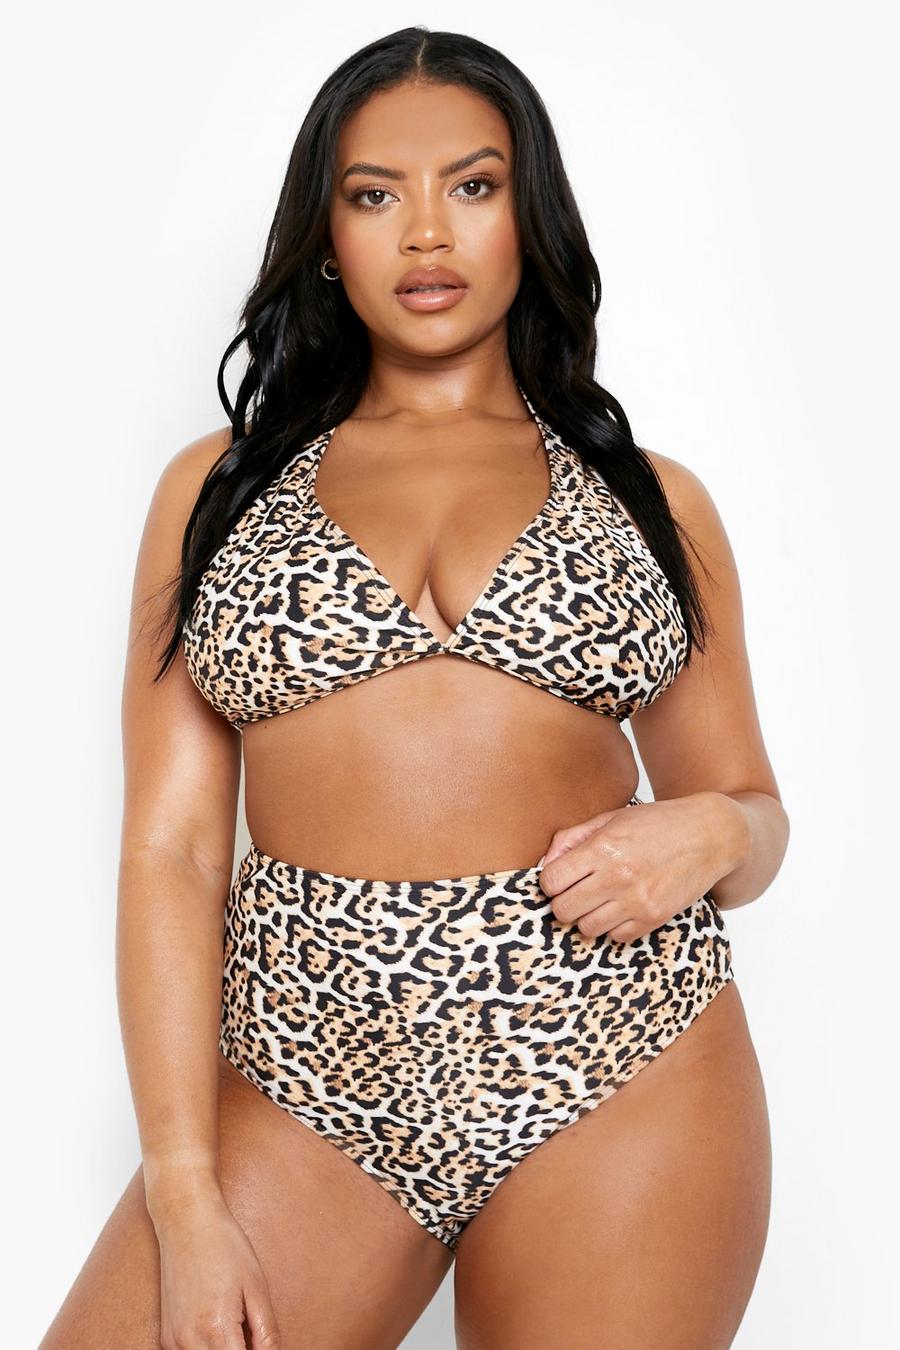 Nó Crop Top Bikini 2020 Leopardo Swimwear Mulheres Banhos Amarelo Push Up  Swimsuit Feminino T Shirt Thong Bikini Sexy Bathing Terno De $106,4